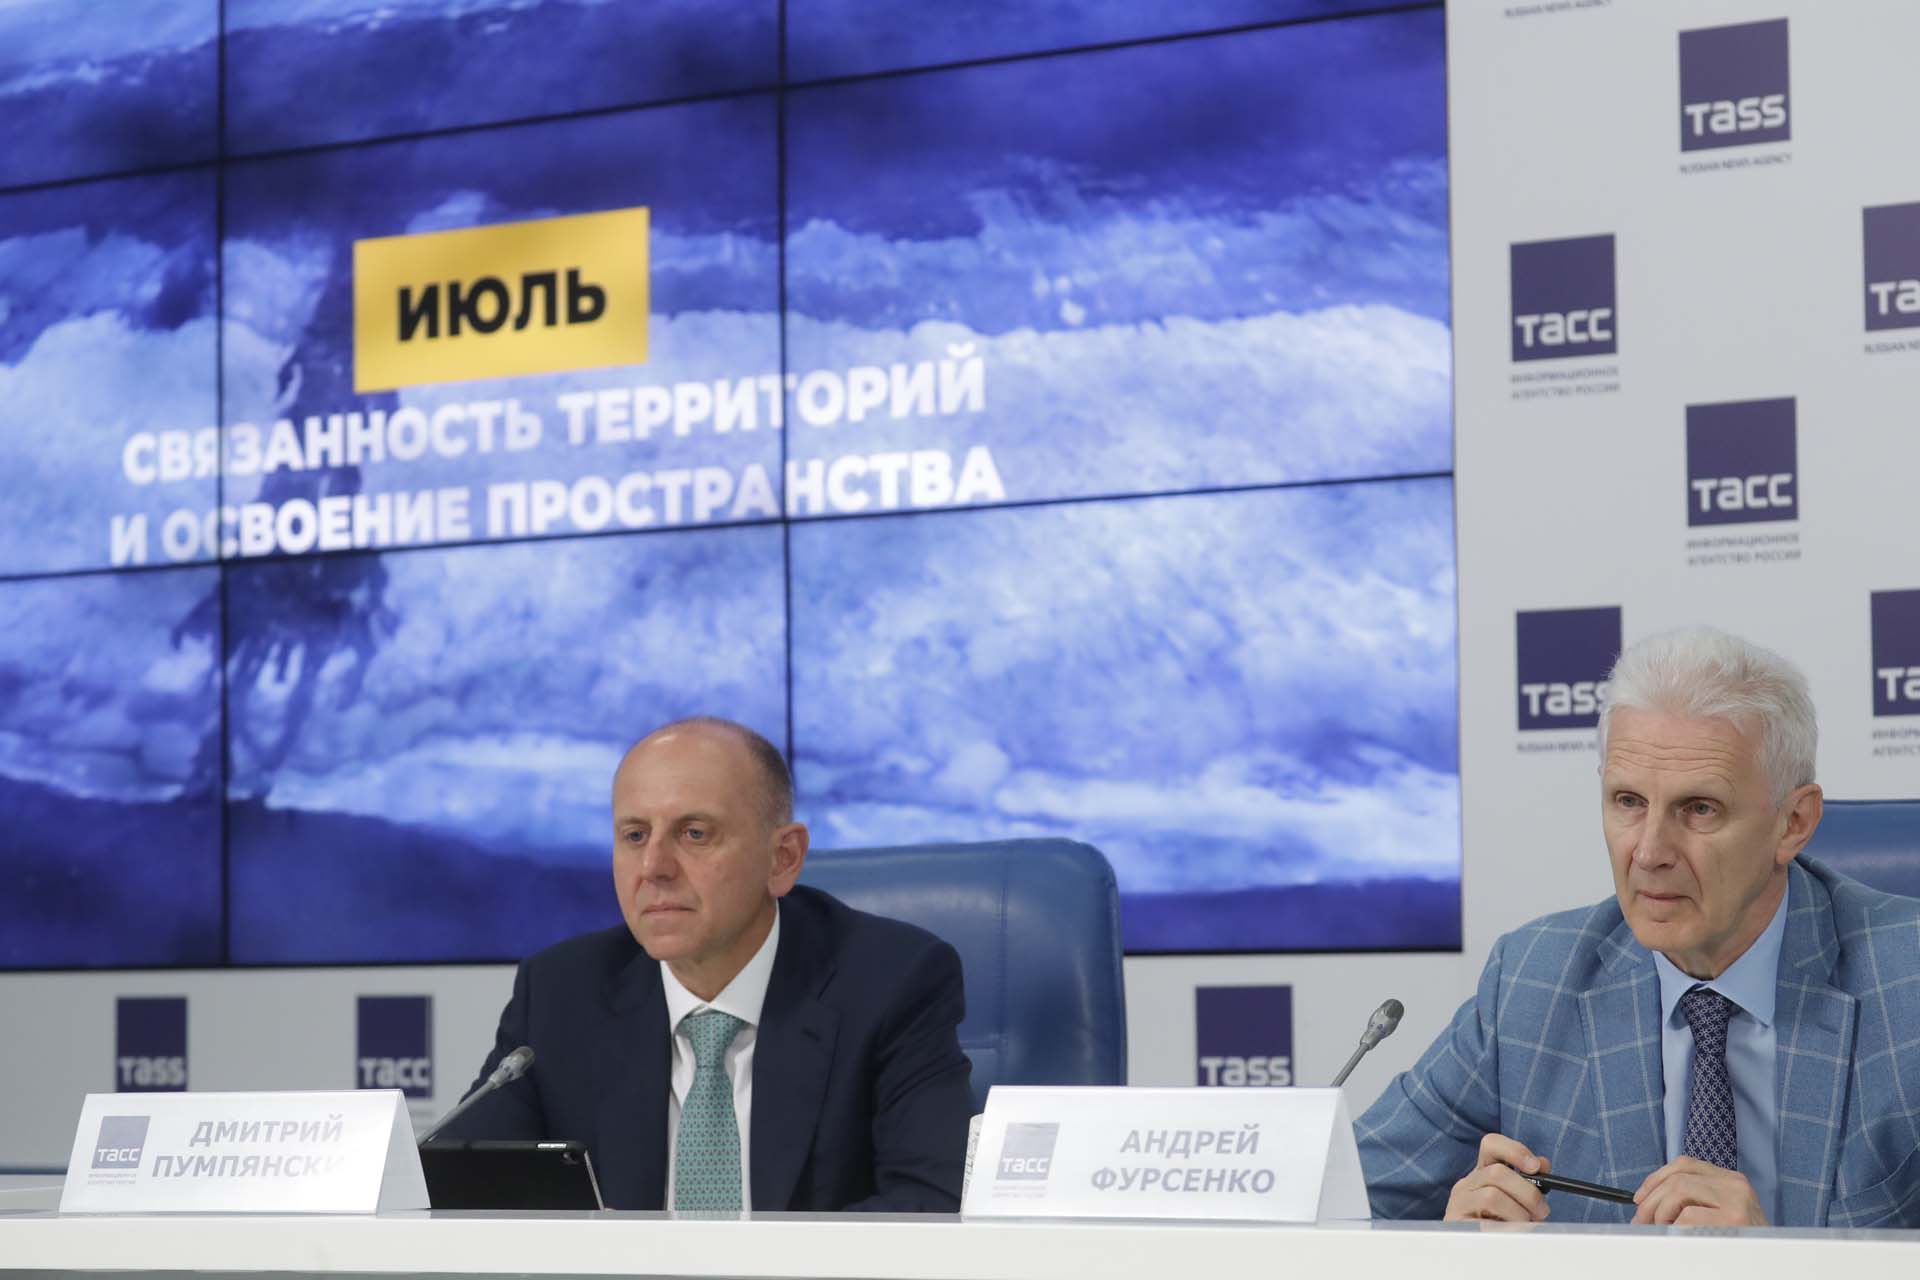 Дмитрий Пумпянский представил итоги и перспективы работы ТМК и Группы Синара над новыми материалами и технологиями